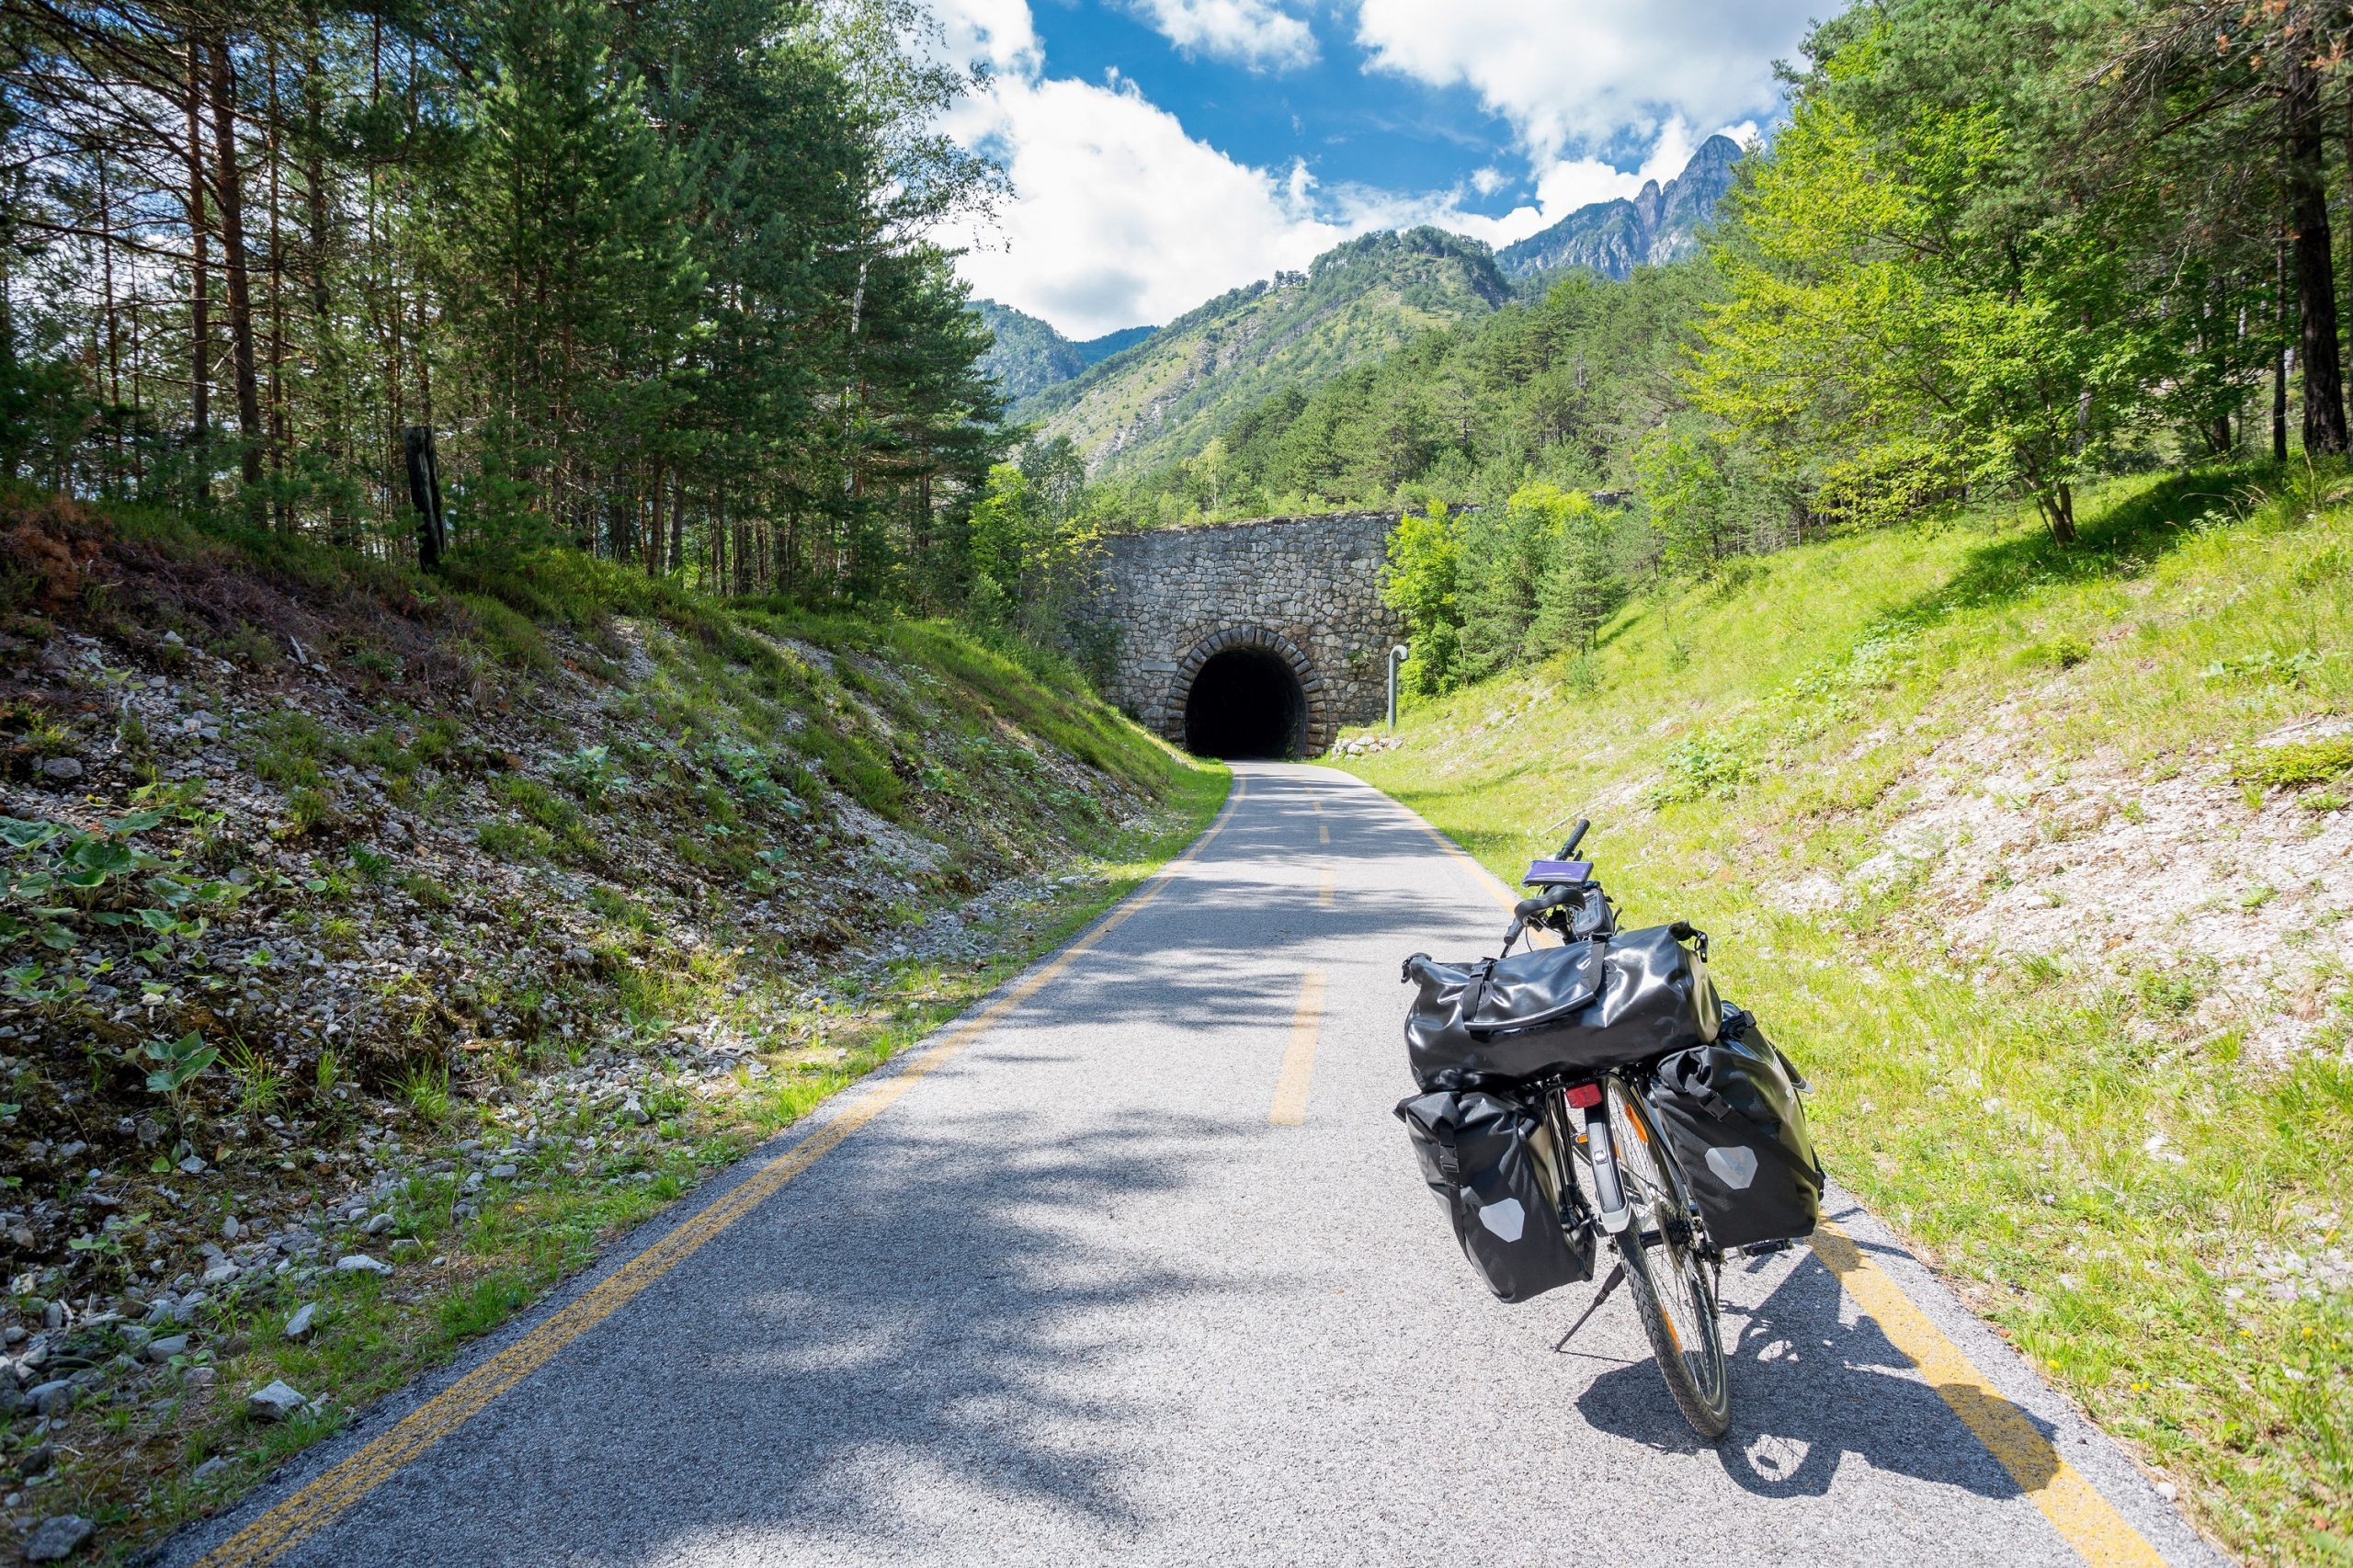 am Alpe Adria Radweg radeln Sie in zwei vielfältigen Ländern und genießen eine abwechslungsreiche Landschaft voller Gegensätze